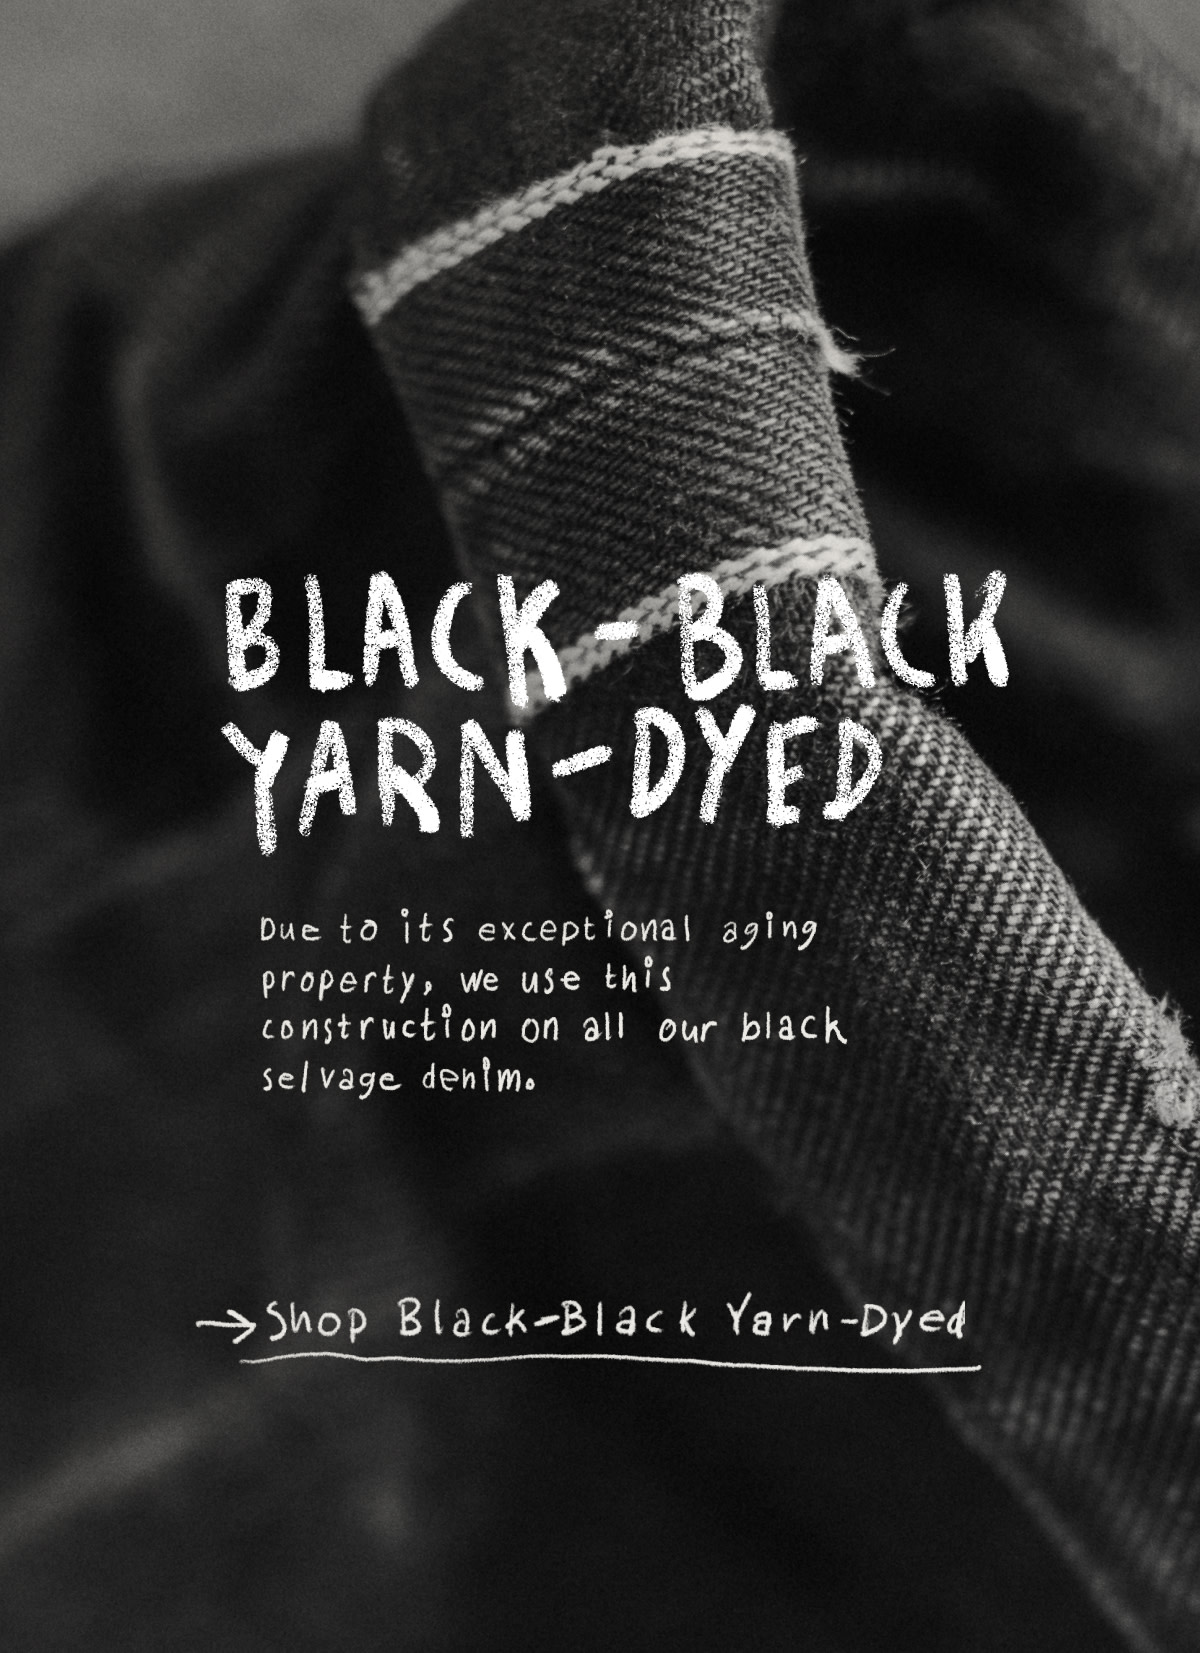 Gudie to Black Denim - Black Black Yarn Dyed